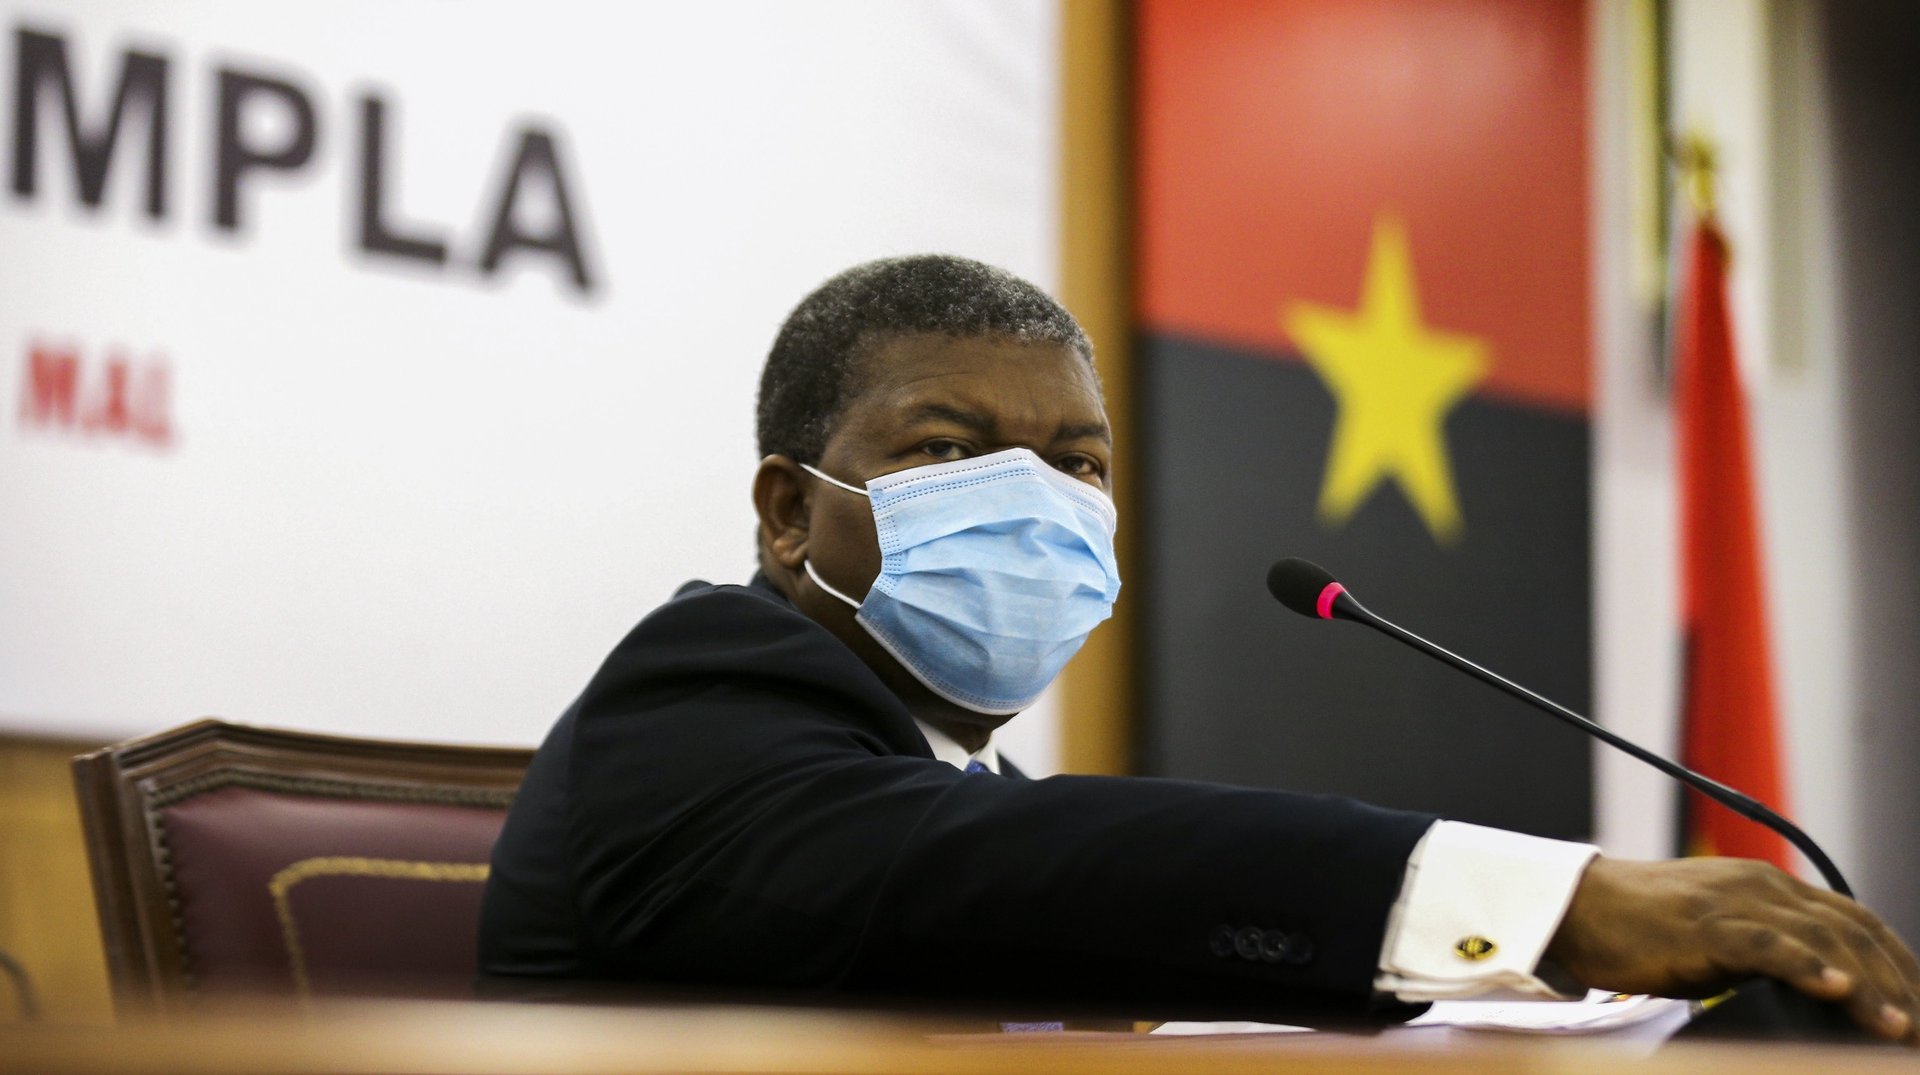 O Presidente da República de Angola, João Lourenço, preside à 1.ª Reunião Ordinária do Bureau Politico do Movimento Popular de Libertação de Angola (MPLA), em Luanda Angola, 22 de janeiro de 2021. AMPE ROGÉRIO/LUSA